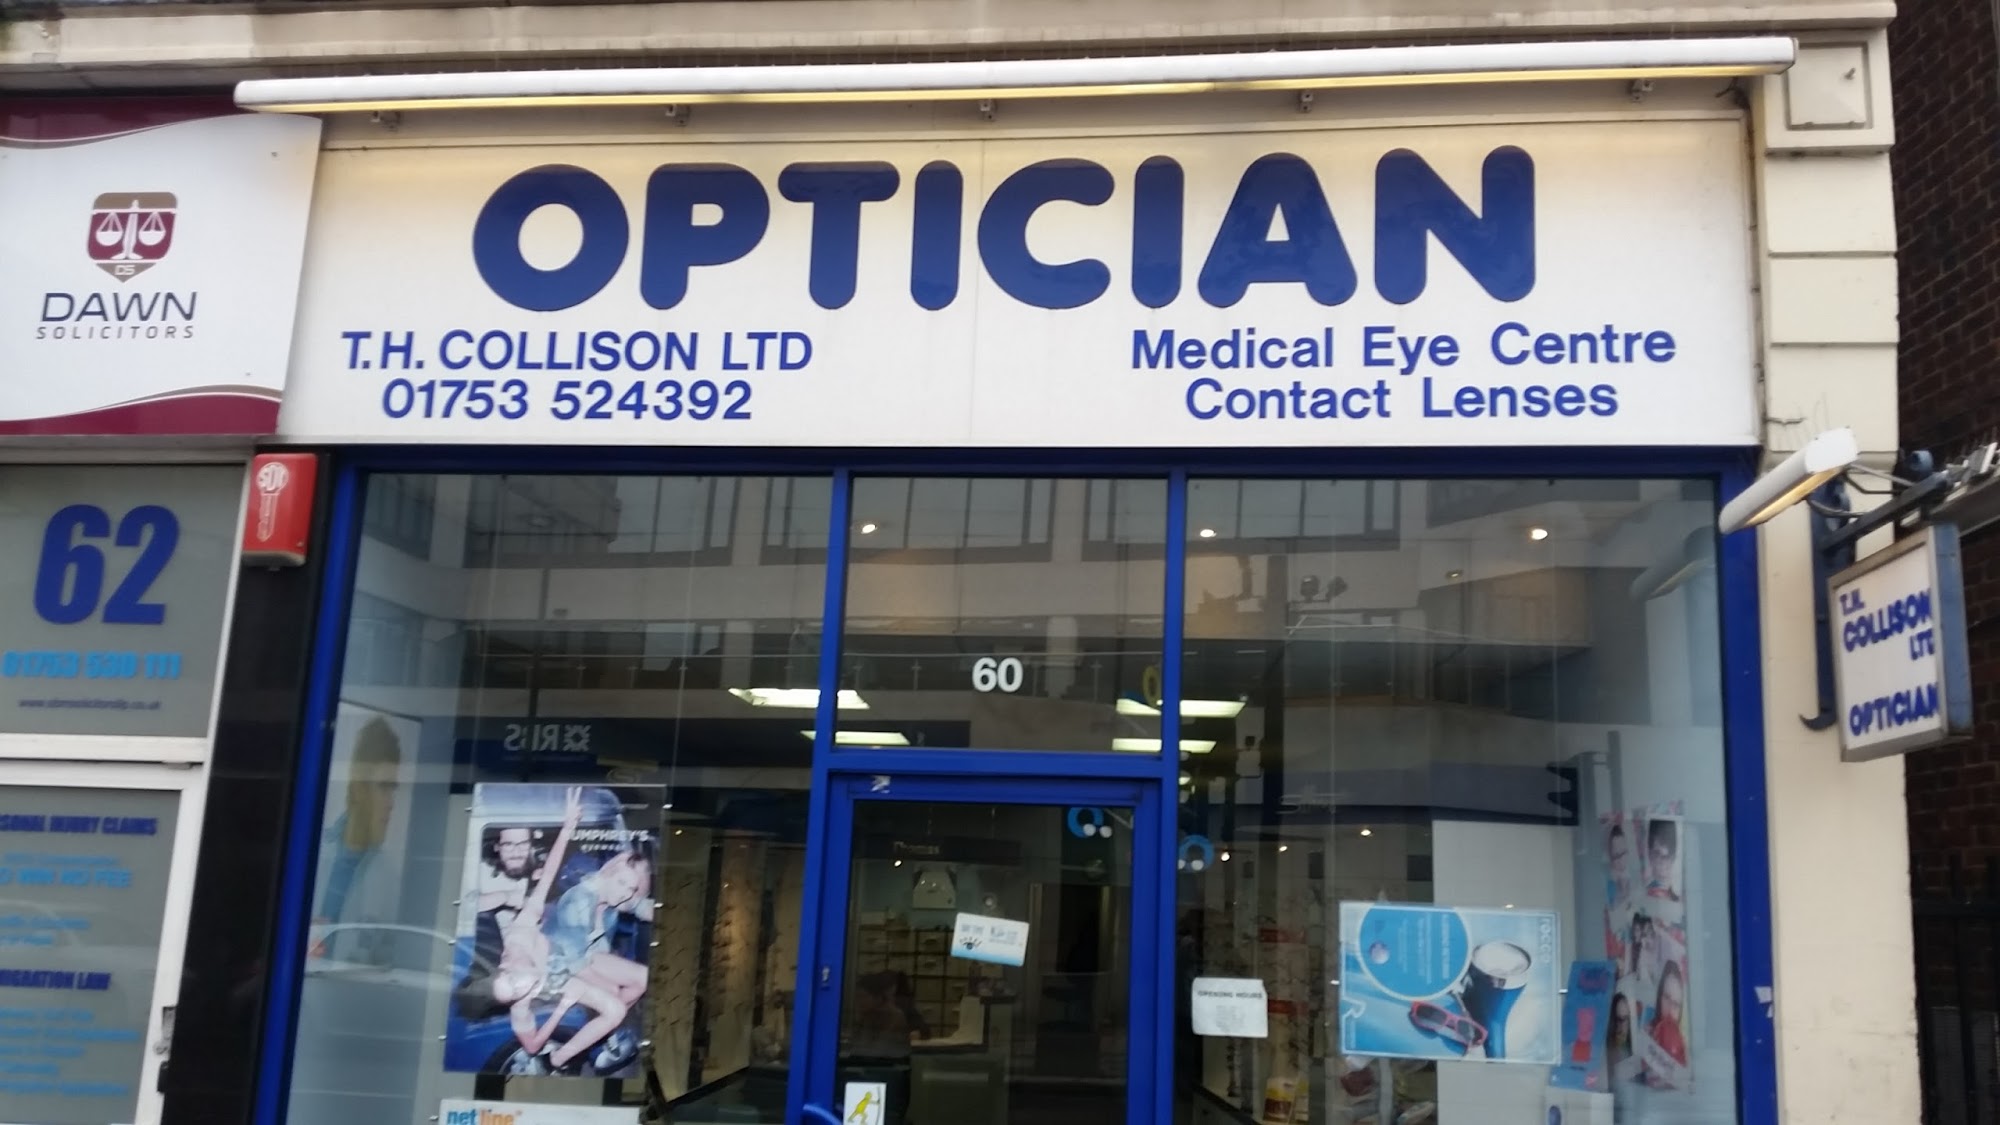 T. H. Collison Opticians